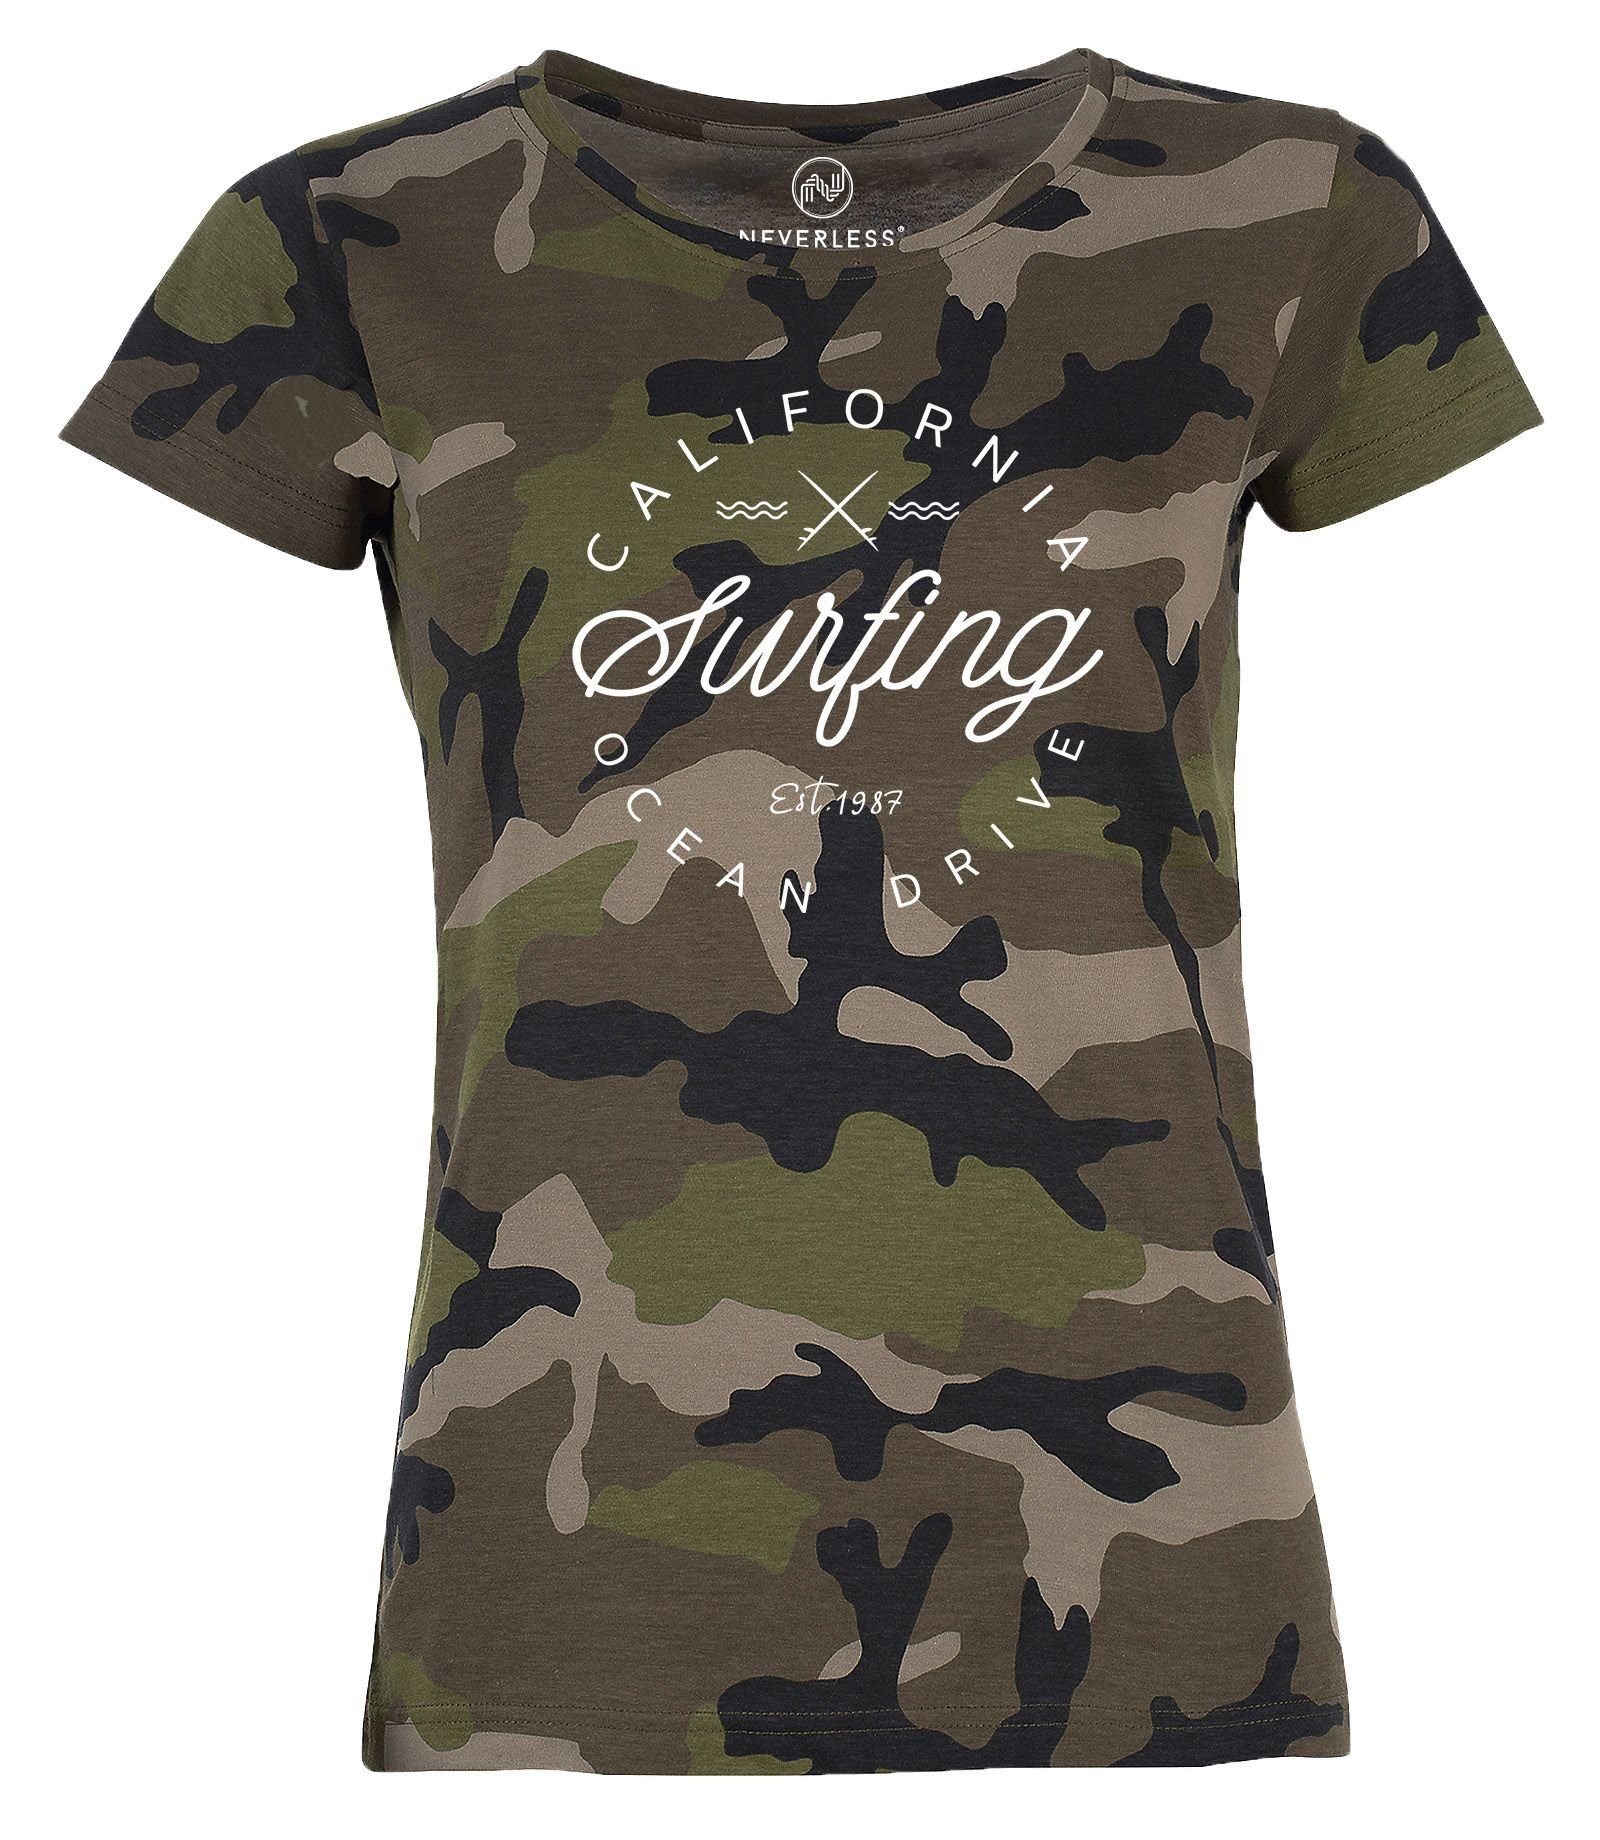 Neverless Print-Shirt Damen Camo-Shirt California Surfing Ocean Drive Summer Camouflage T-Shirt Tarnmuster Neverless® mit Print